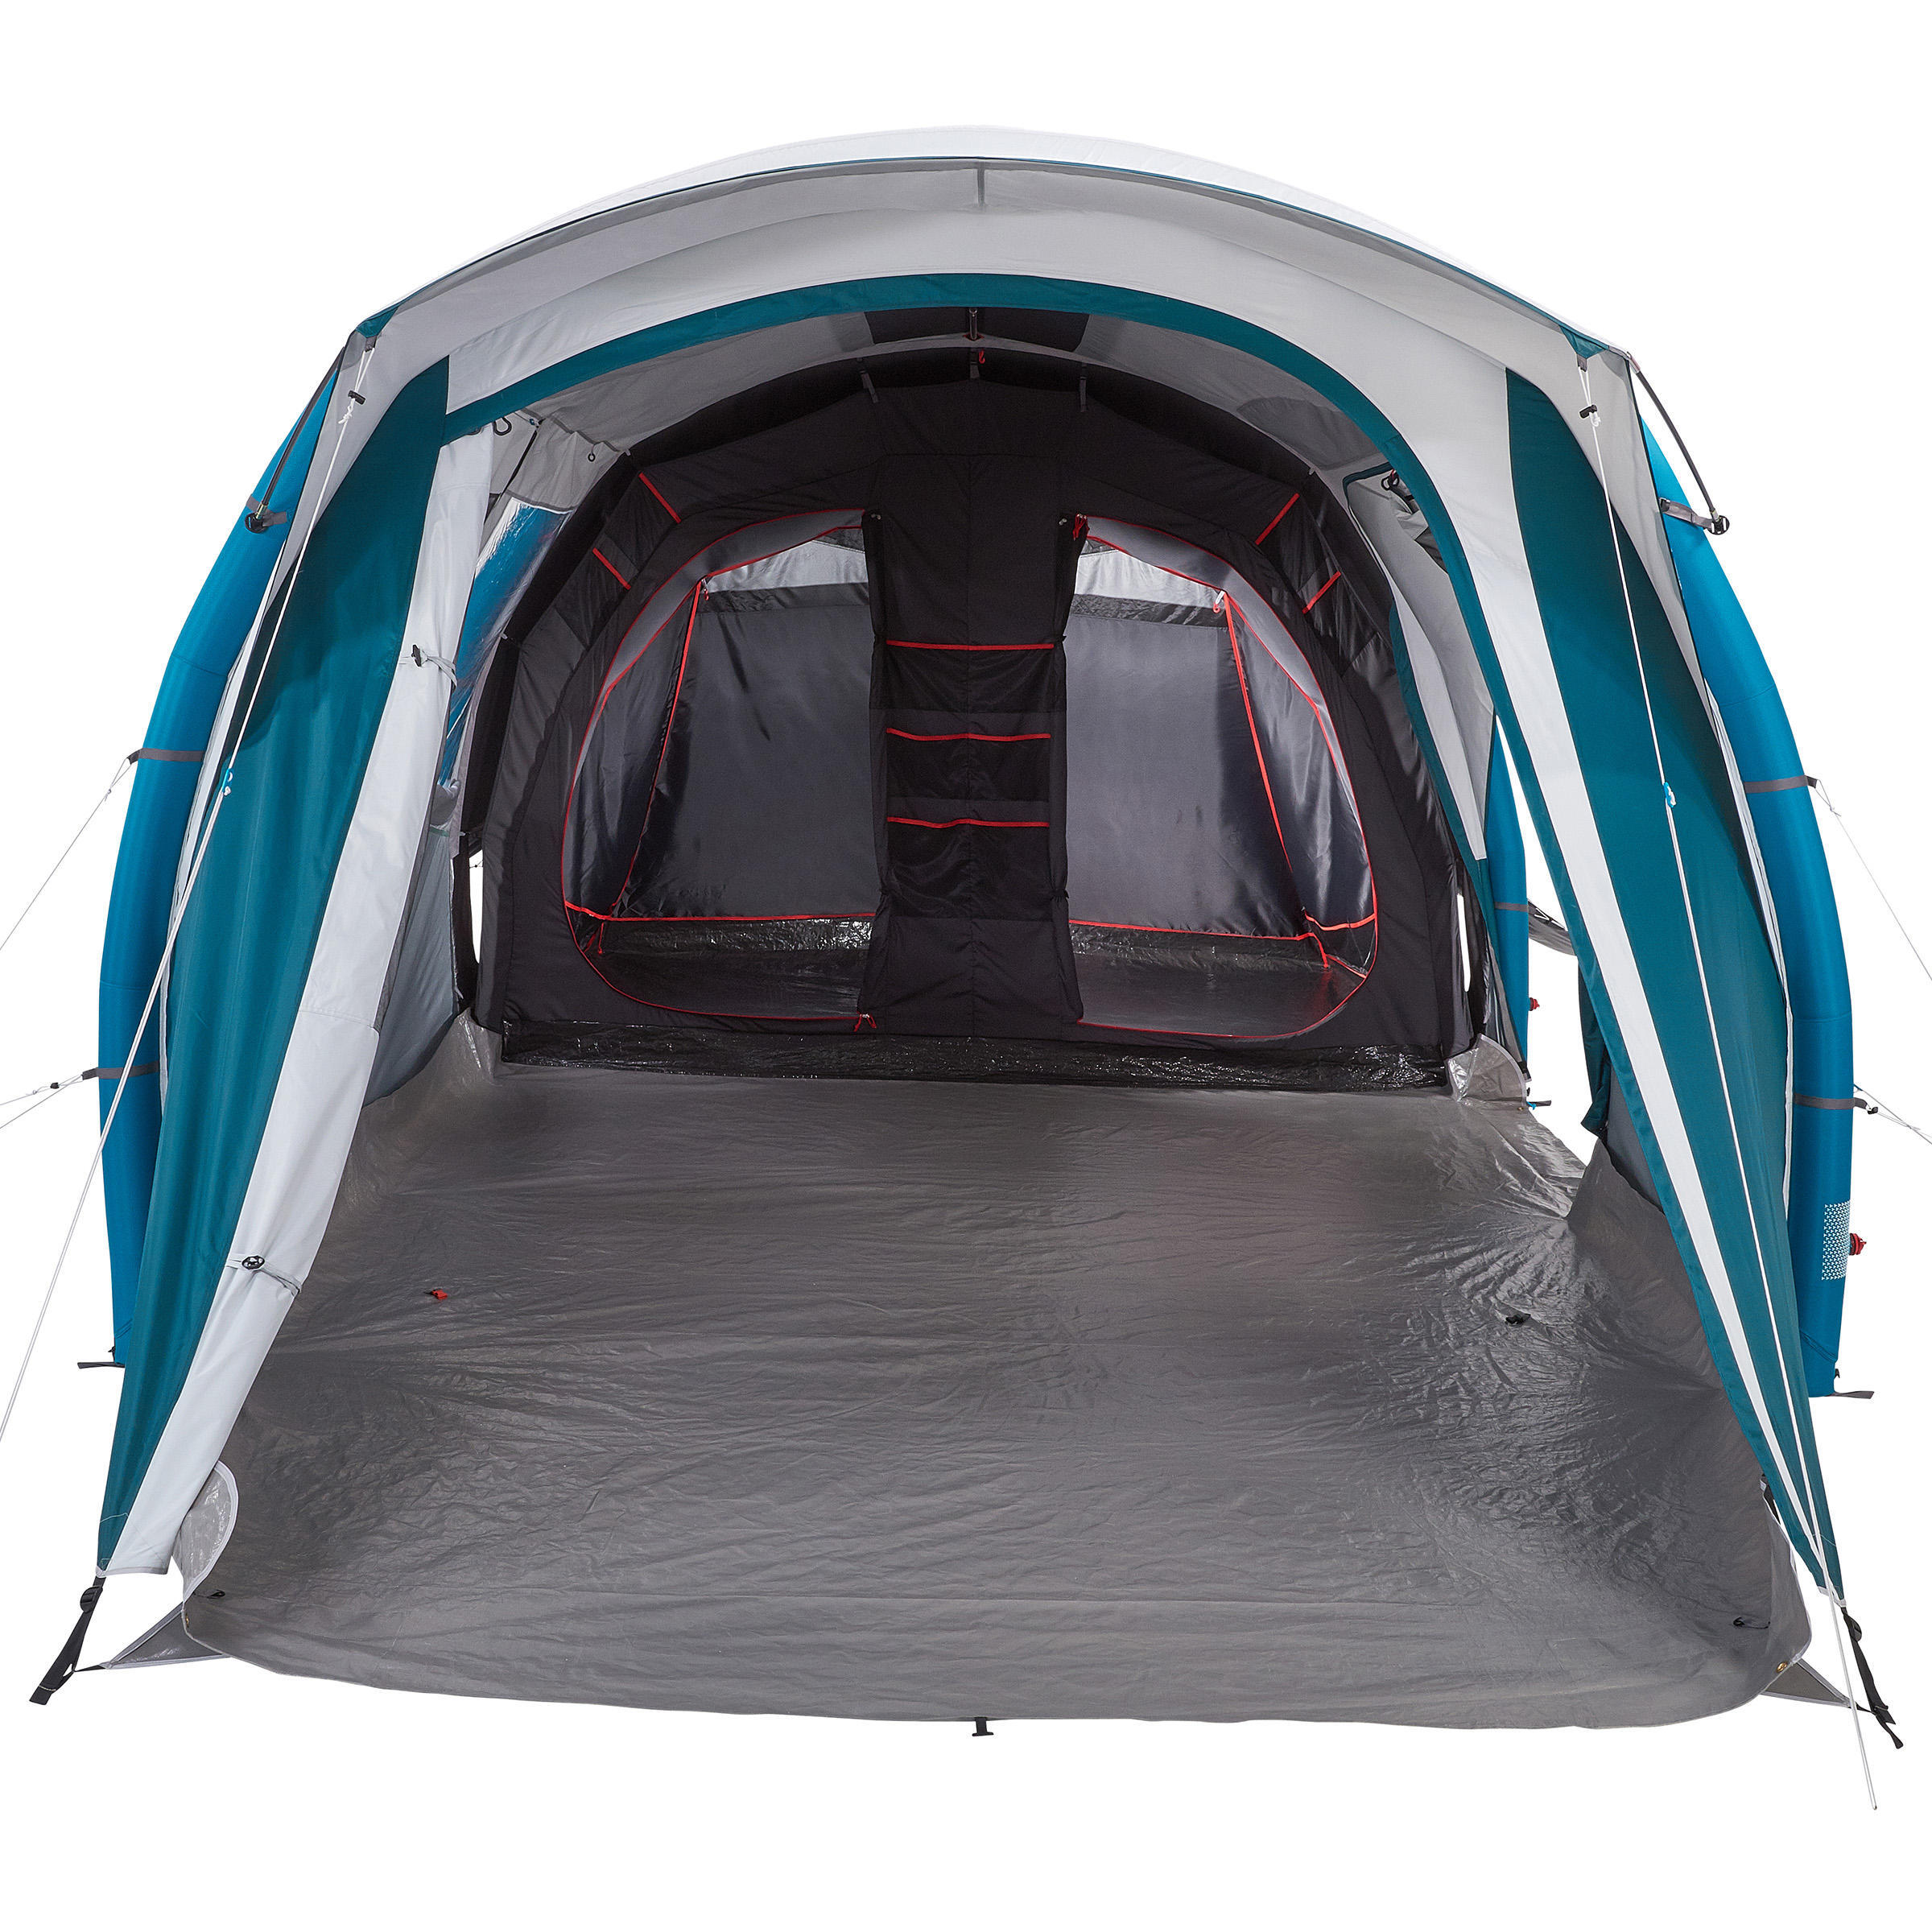 цена Спальный отсек и пол палатки Quechua Air Seconds 6.3 F&B в качестве запчасти для модели палатки